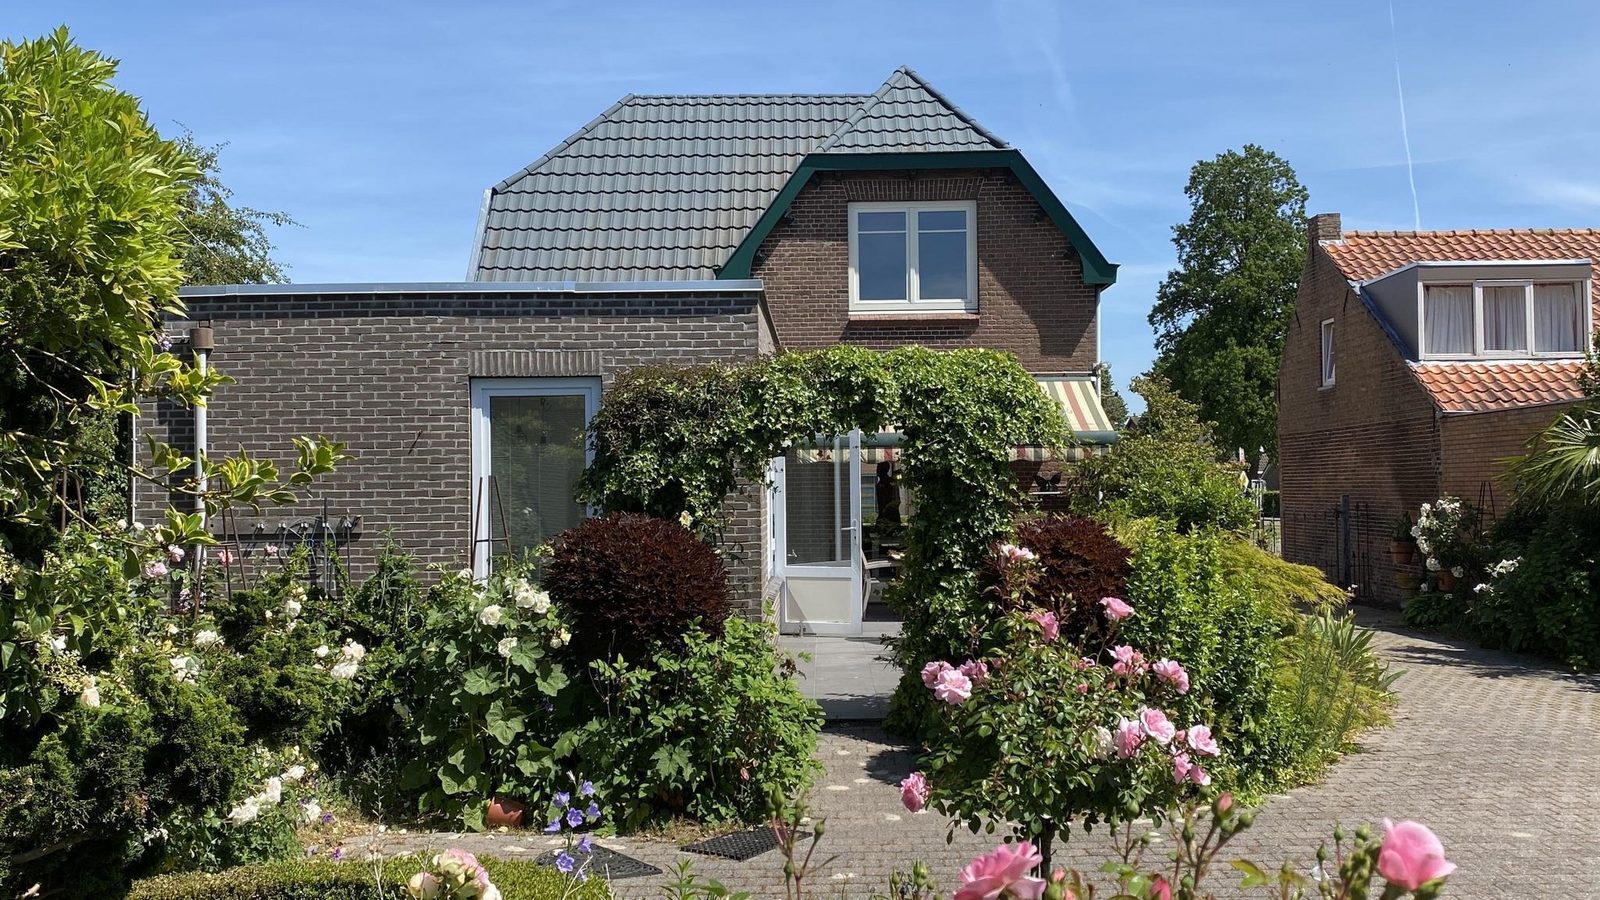 VZ840 Detached Holiday Home in Aardenburg Top Merken Winkel